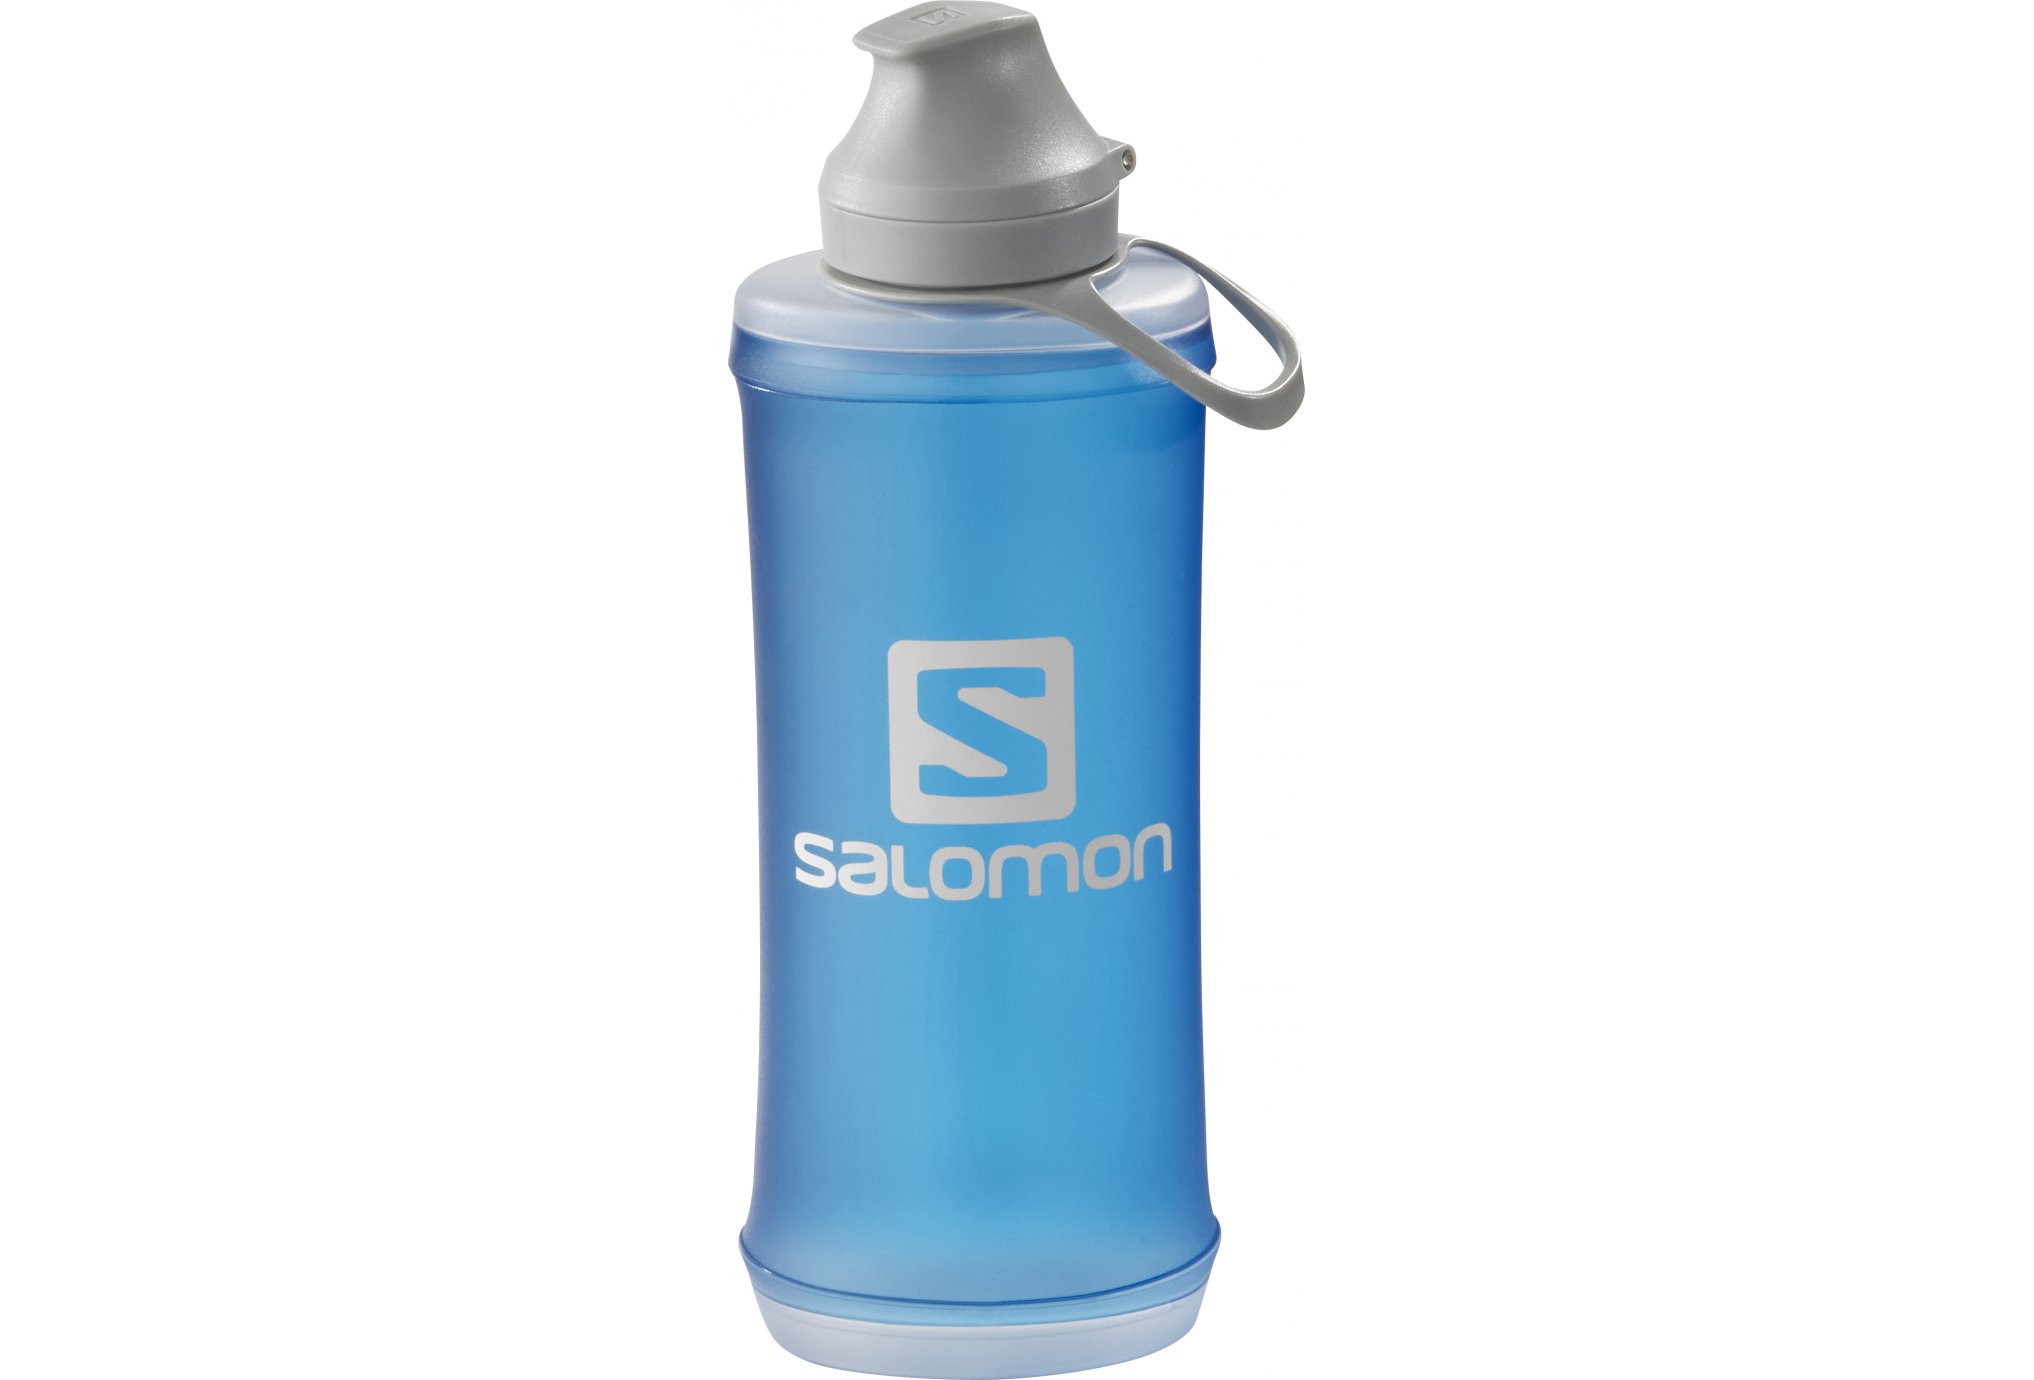 Salomon Outlife 550 mL Sac hydratation / Gourde